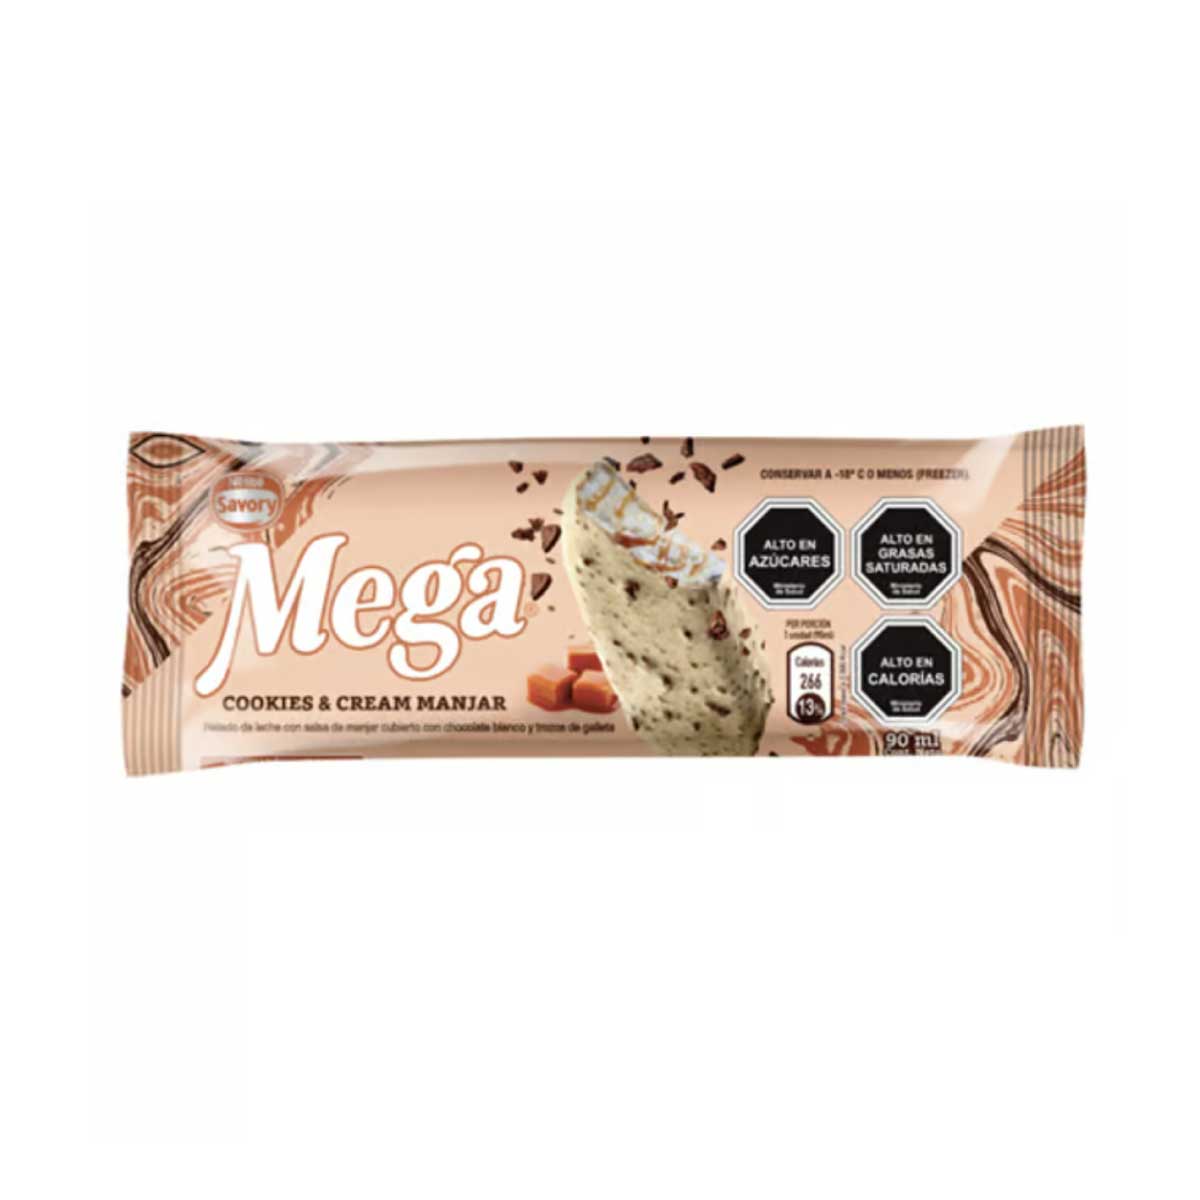 Helado Mega cookies and cream - Savory